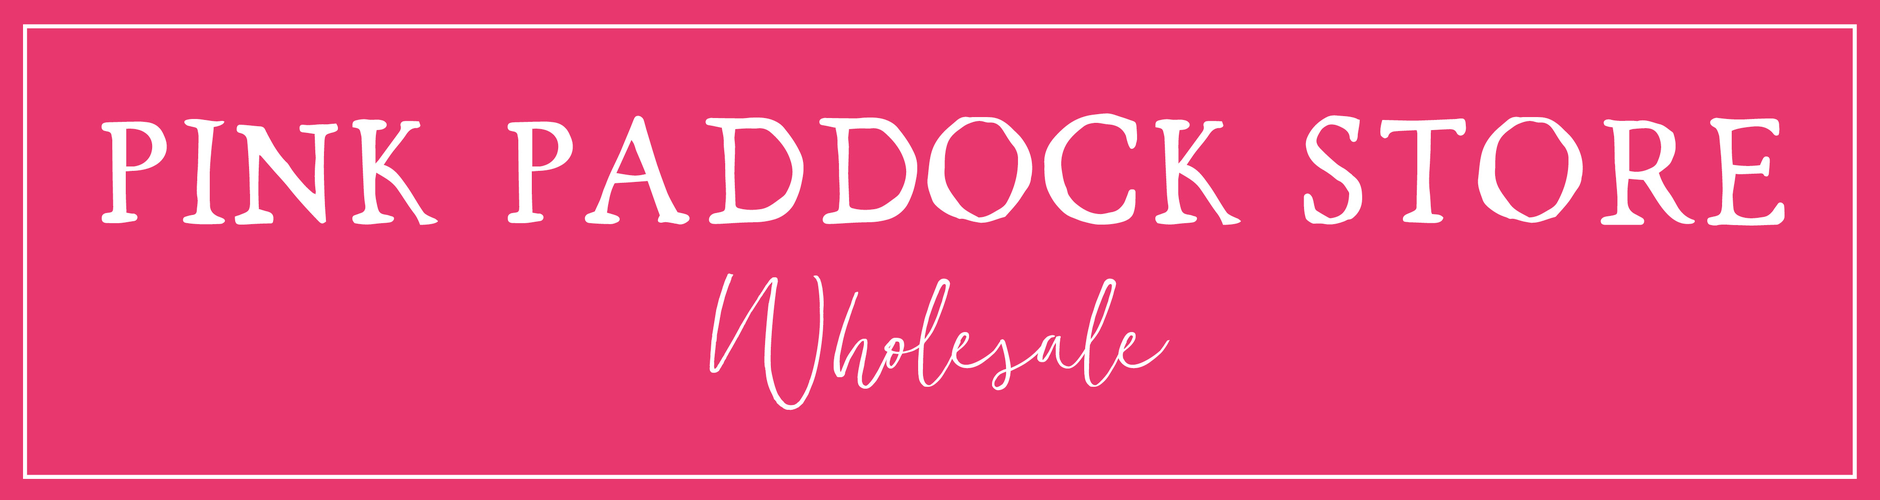 🌼 Wholesale 🌼Pink Paddock Store 🌼